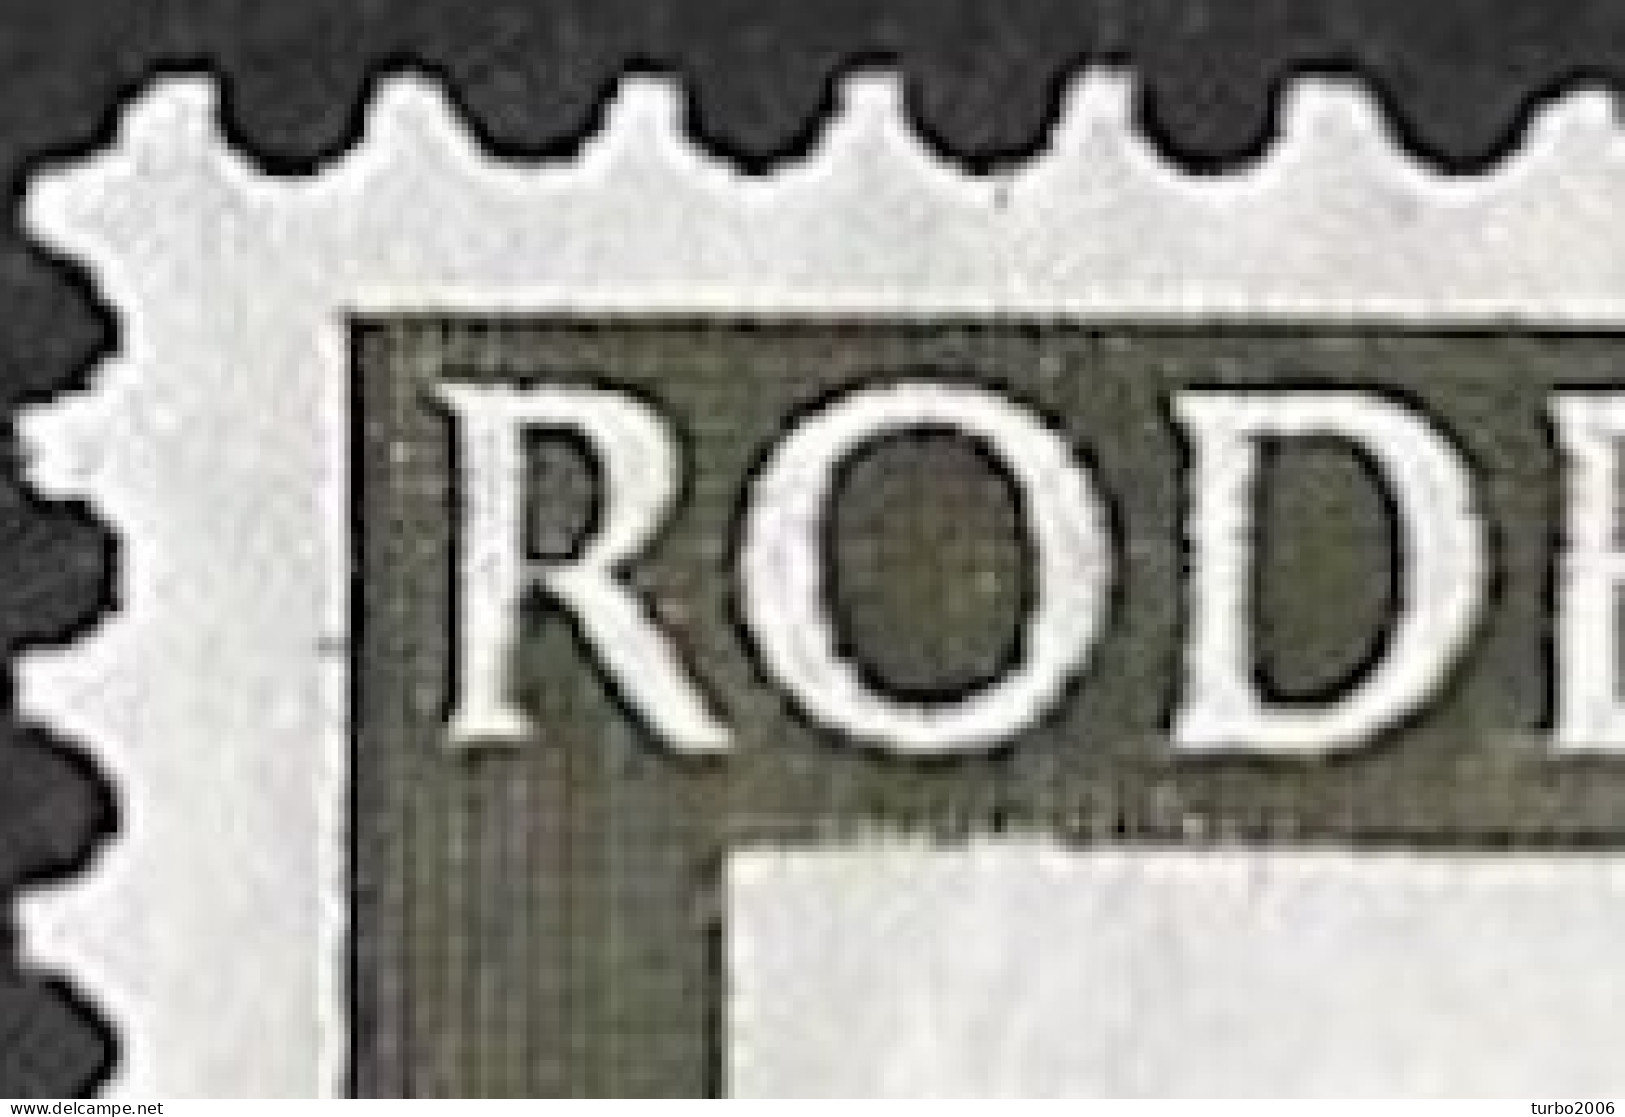 Plaatfout Inham In De Witte Rand Onder De O Van ROde In 1953 Rode Kruis Zegels 2 +3 Ct NVPH 607 PM 2 Ongestempeld - Abarten Und Kuriositäten